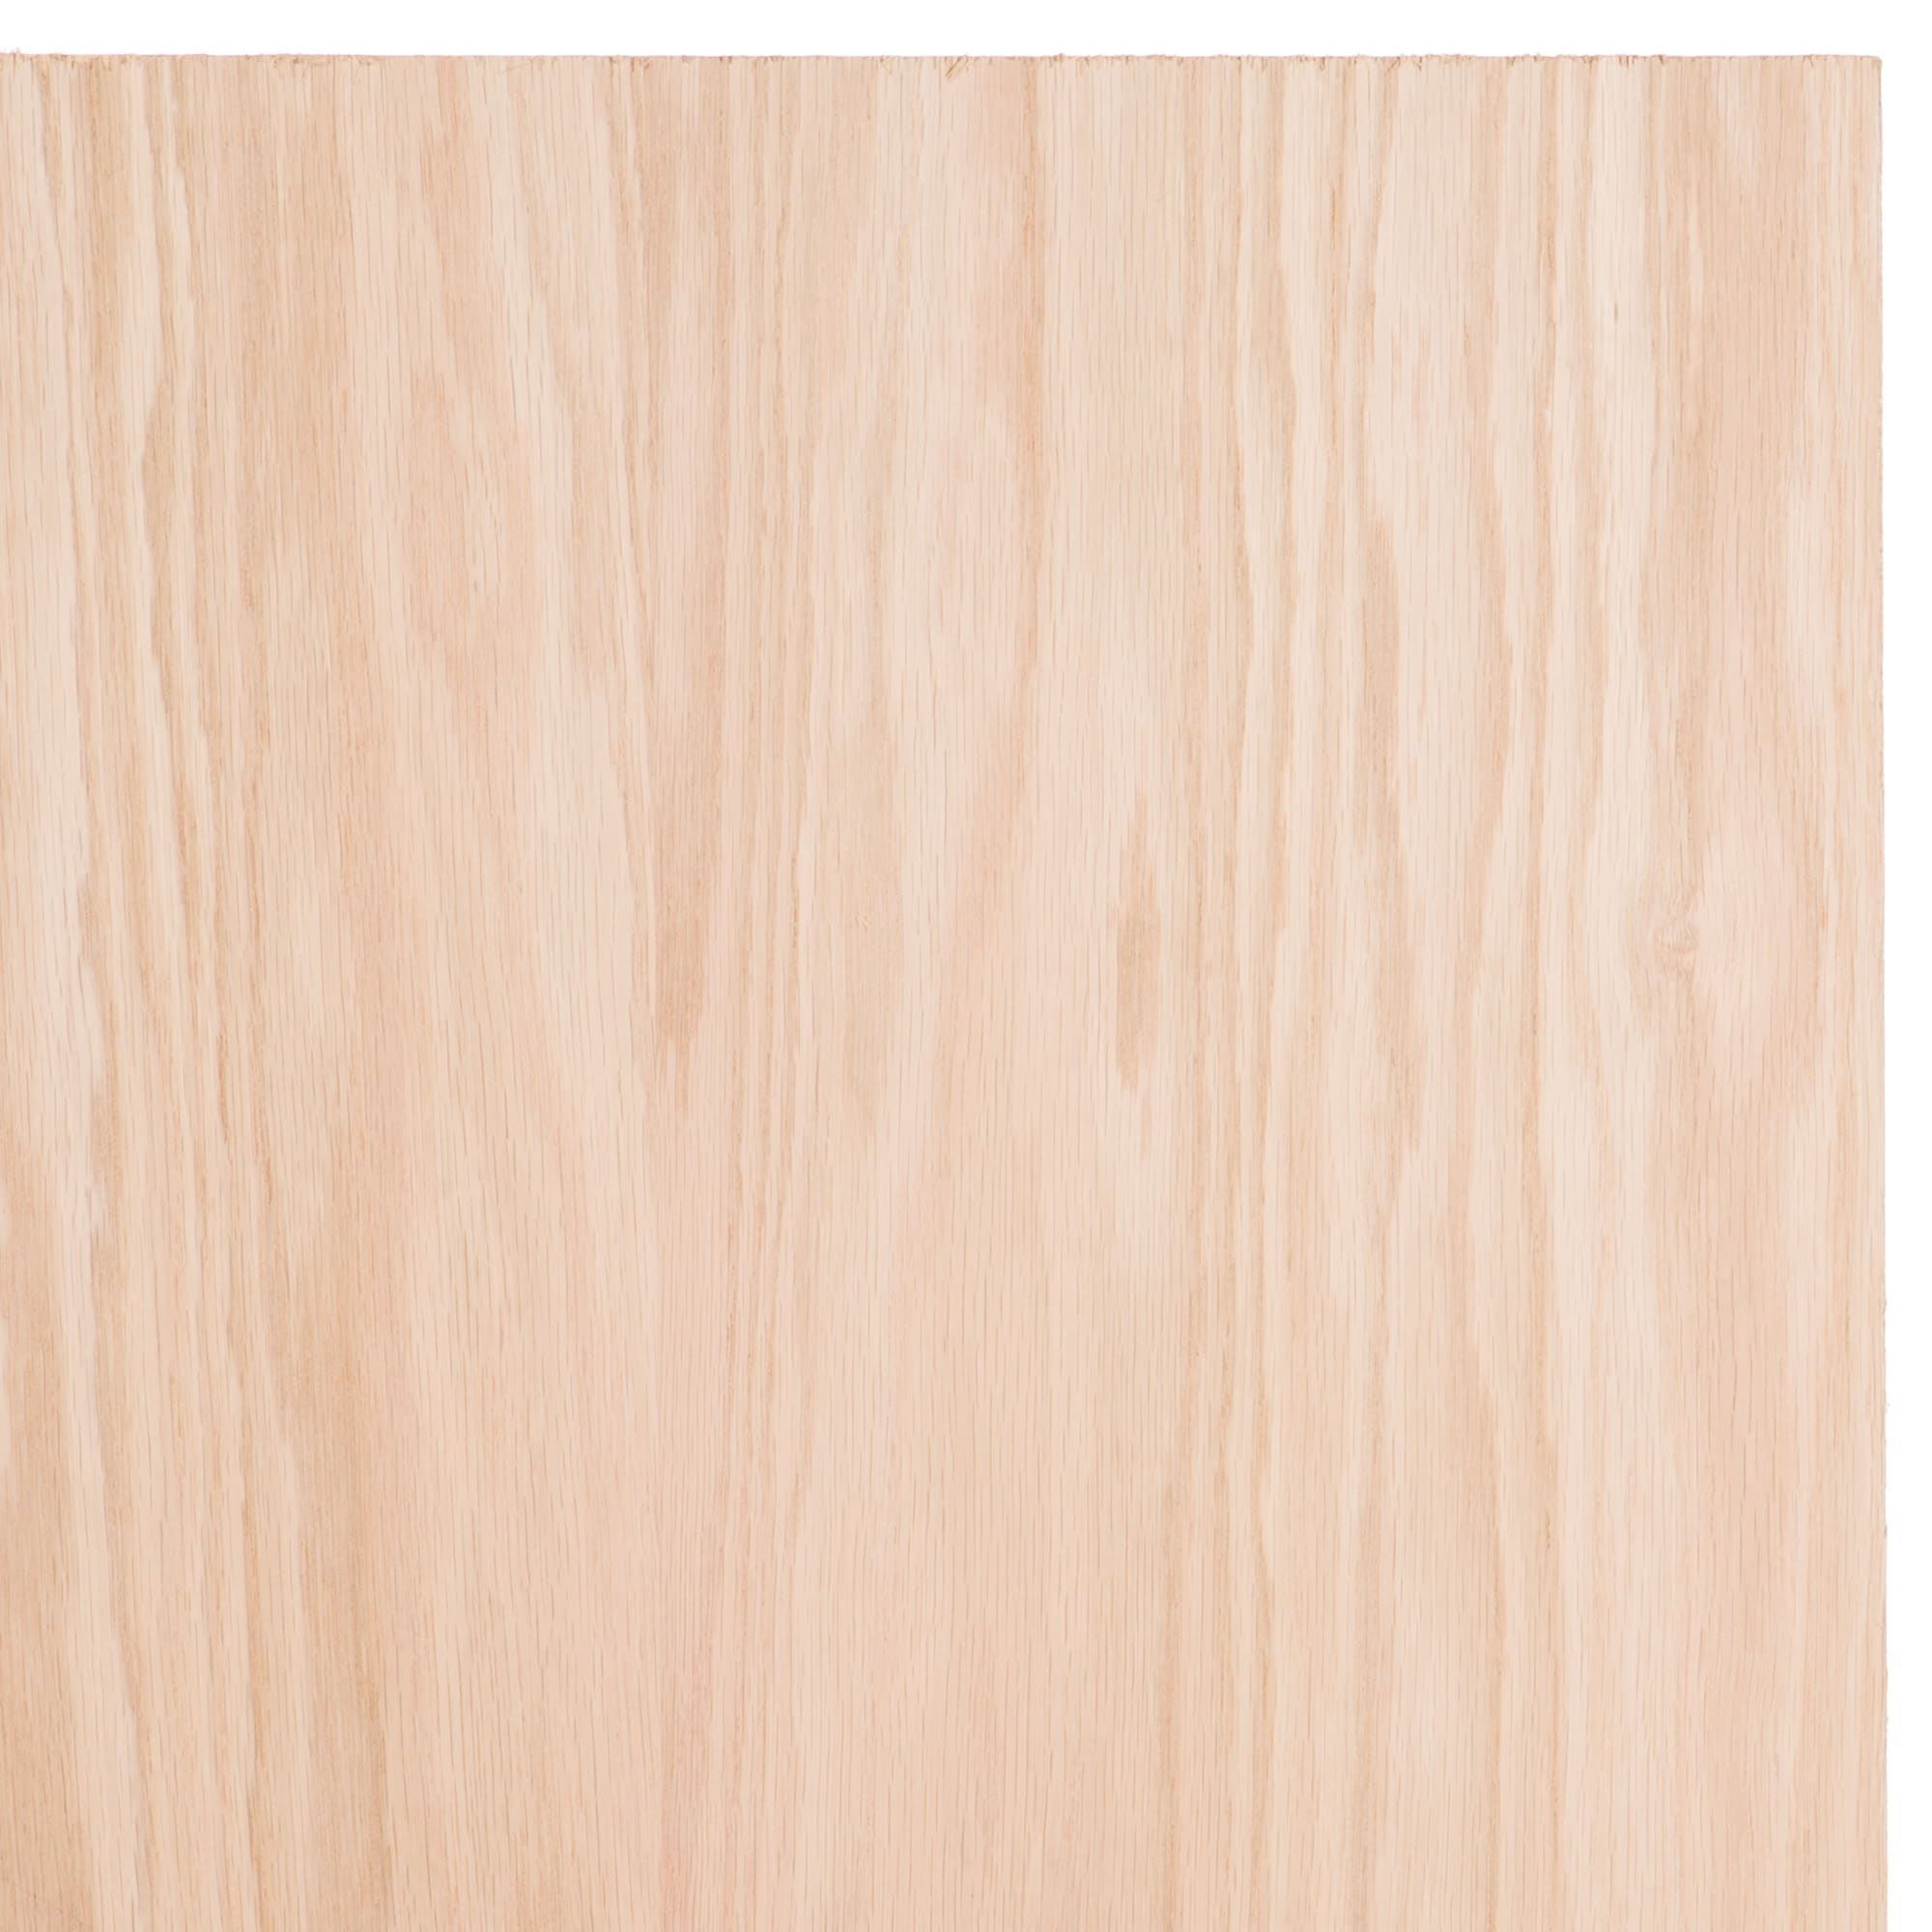 Oak Plywood Handi Panel At Menards